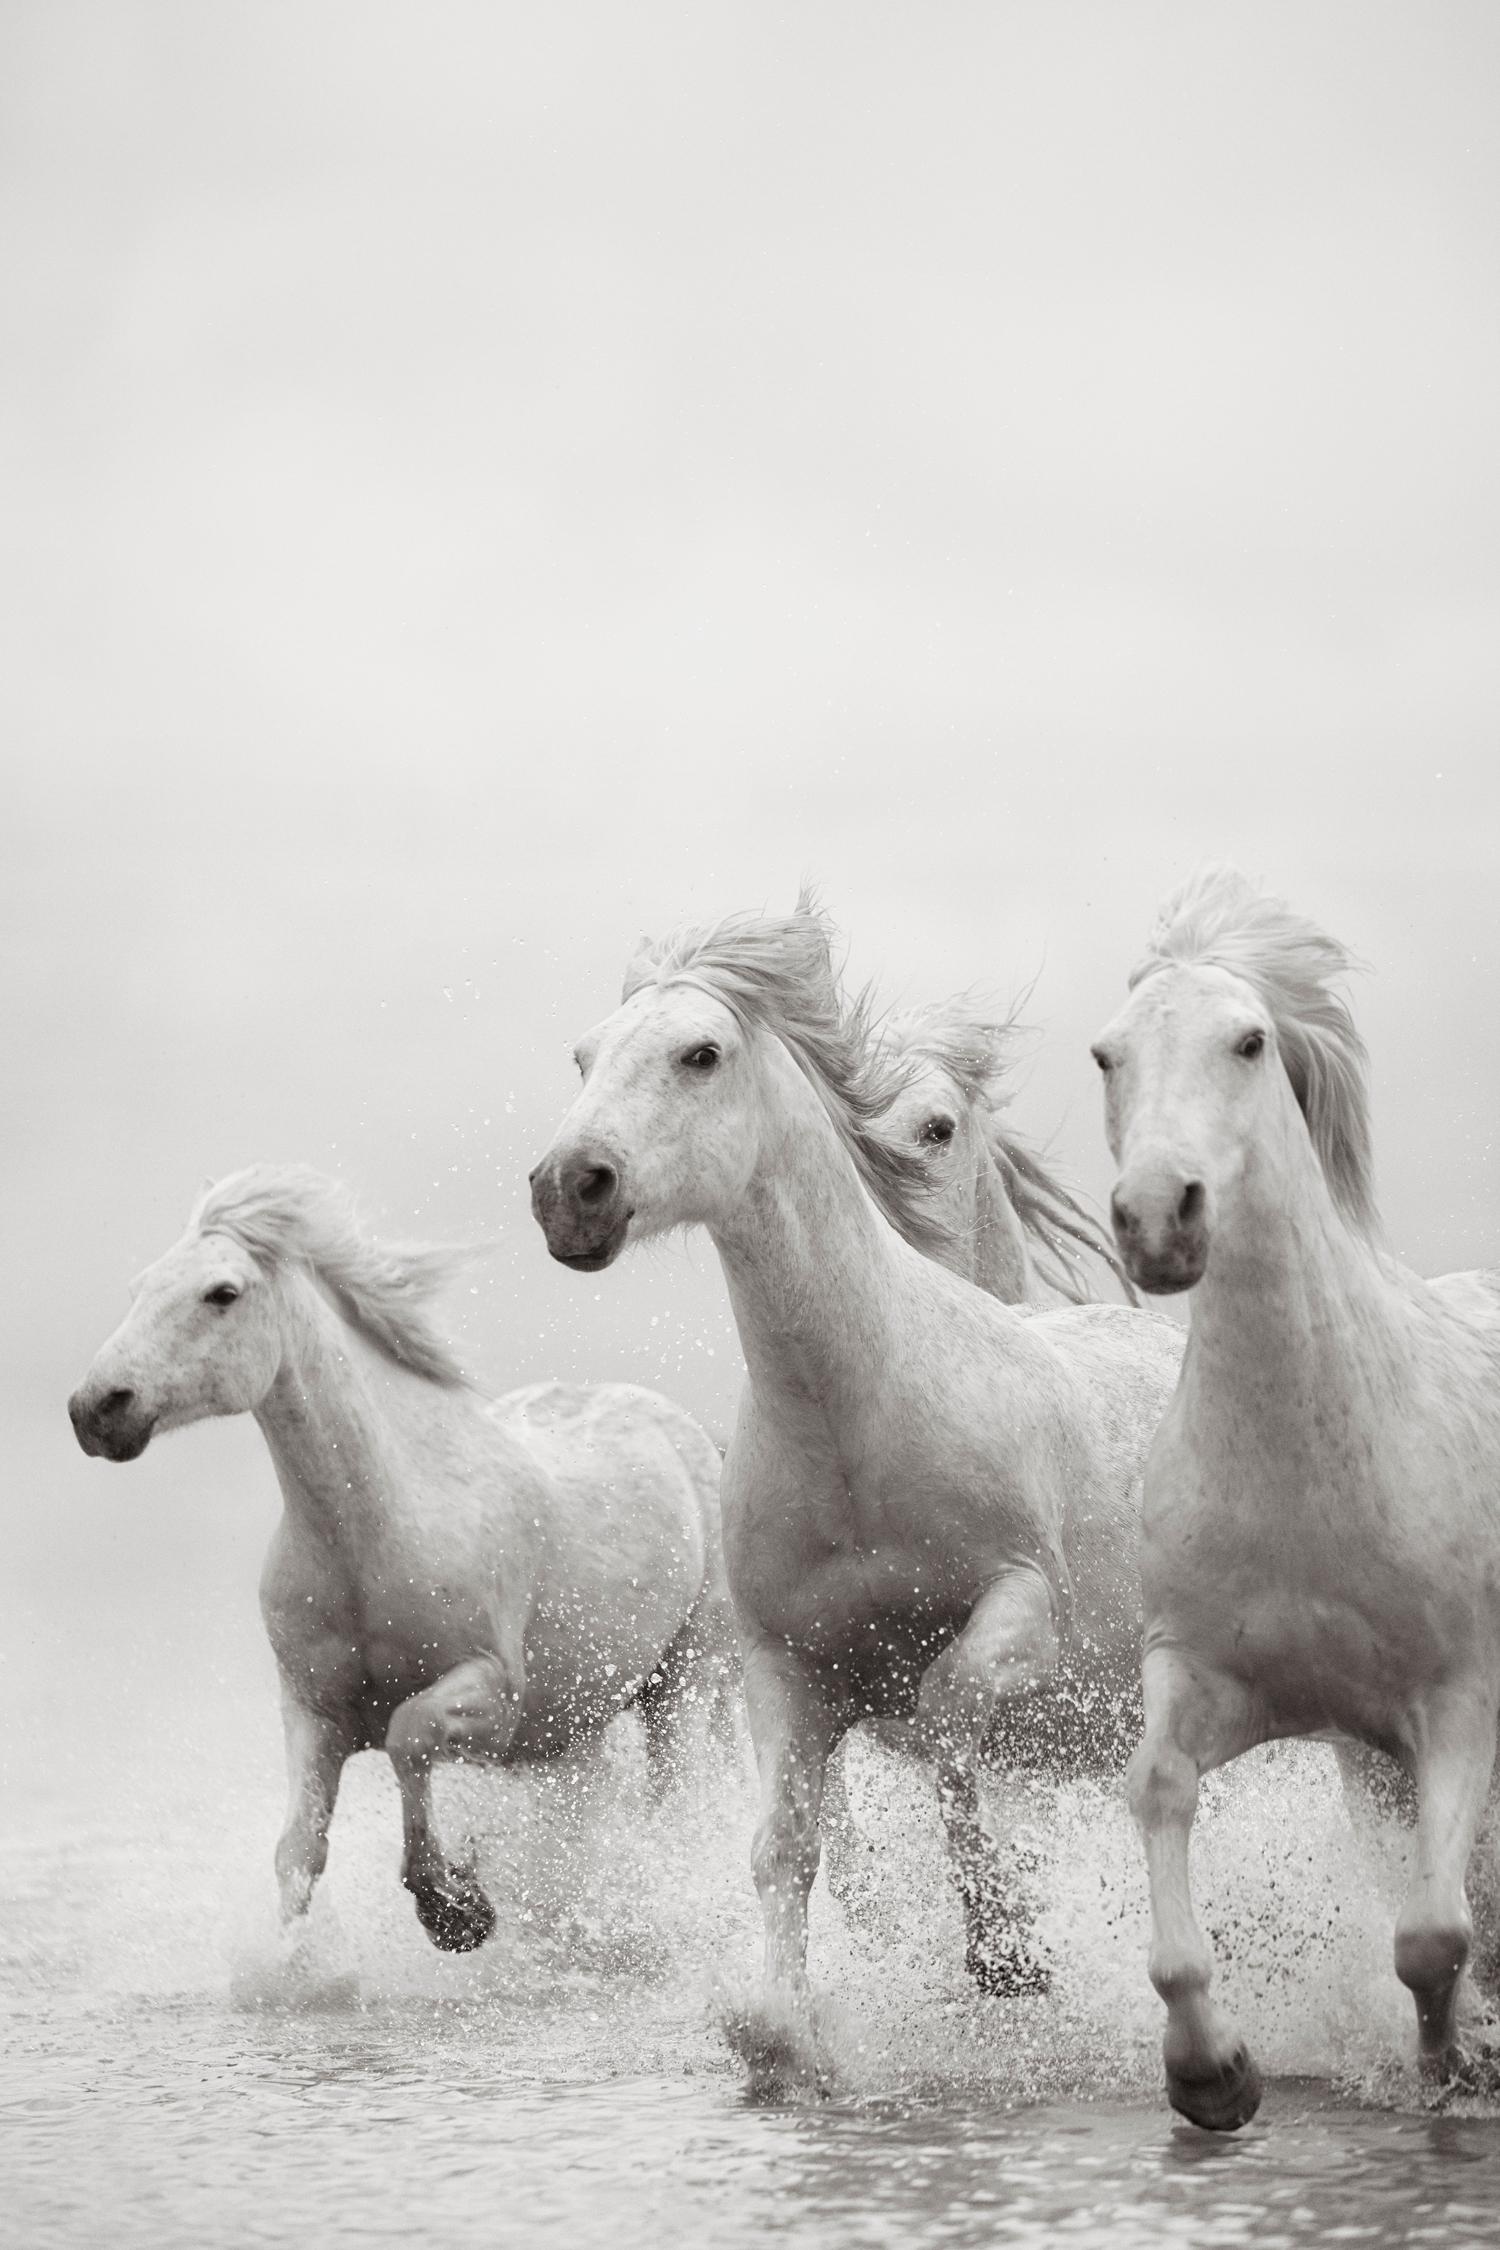 Drew Doggett Black and White Photograph – Ganz in Weiß gehaltene Camargue-Pferde, die durch das Wasser laufen, erhebend, ätherisch